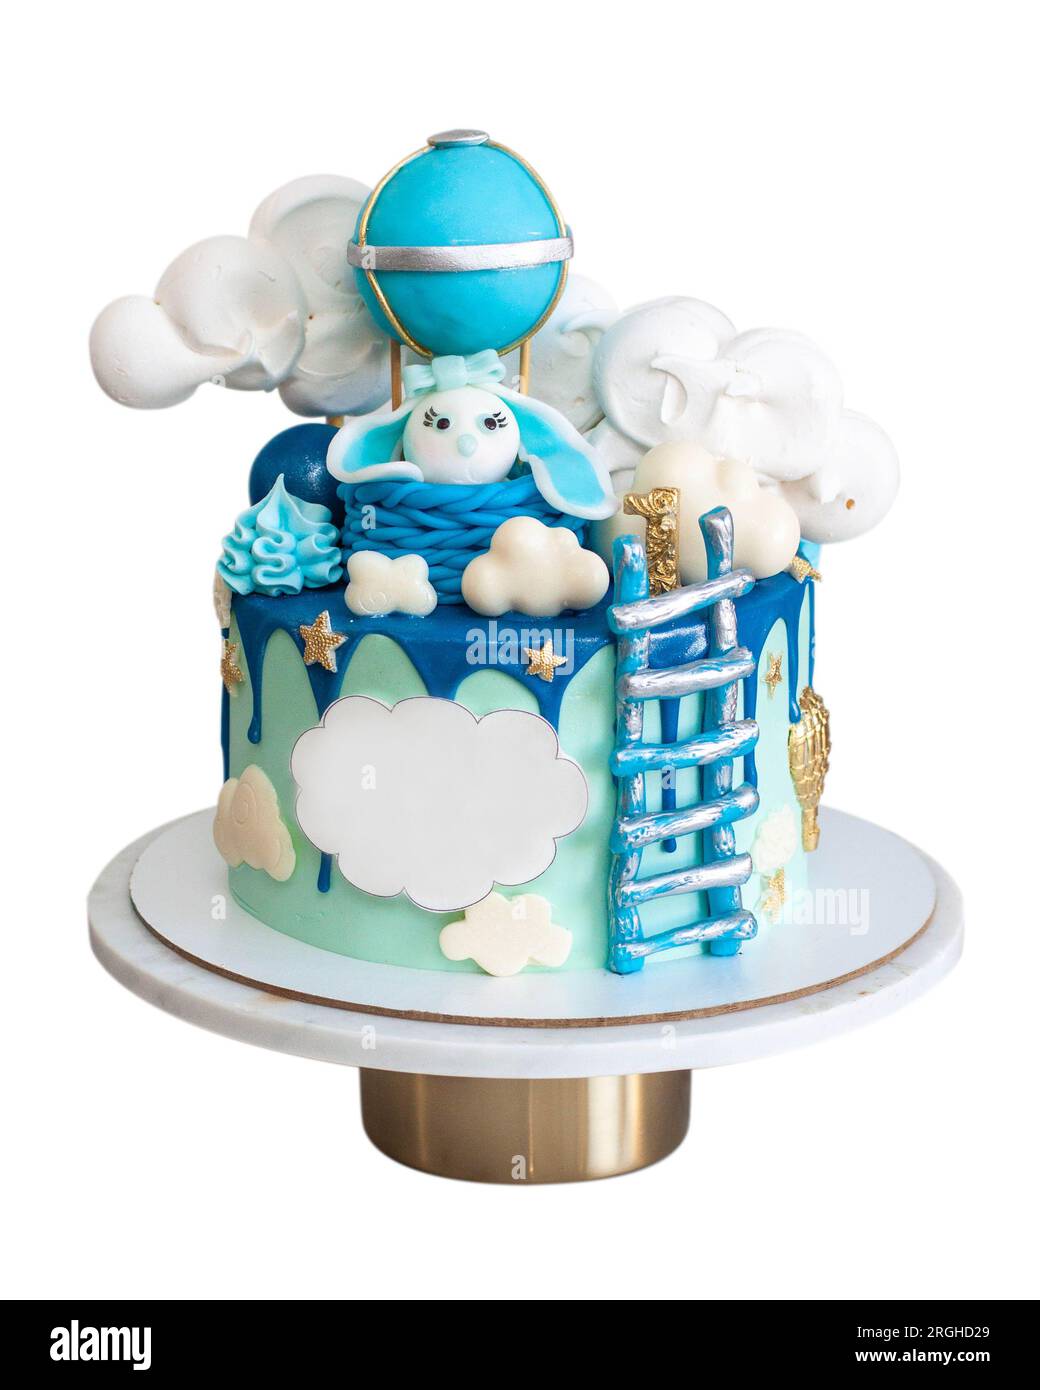 Beau gâteau d'anniversaire bleu avec lapin fondant, échelle, nuages et ballon d'air. Isolé sur fond blanc Banque D'Images